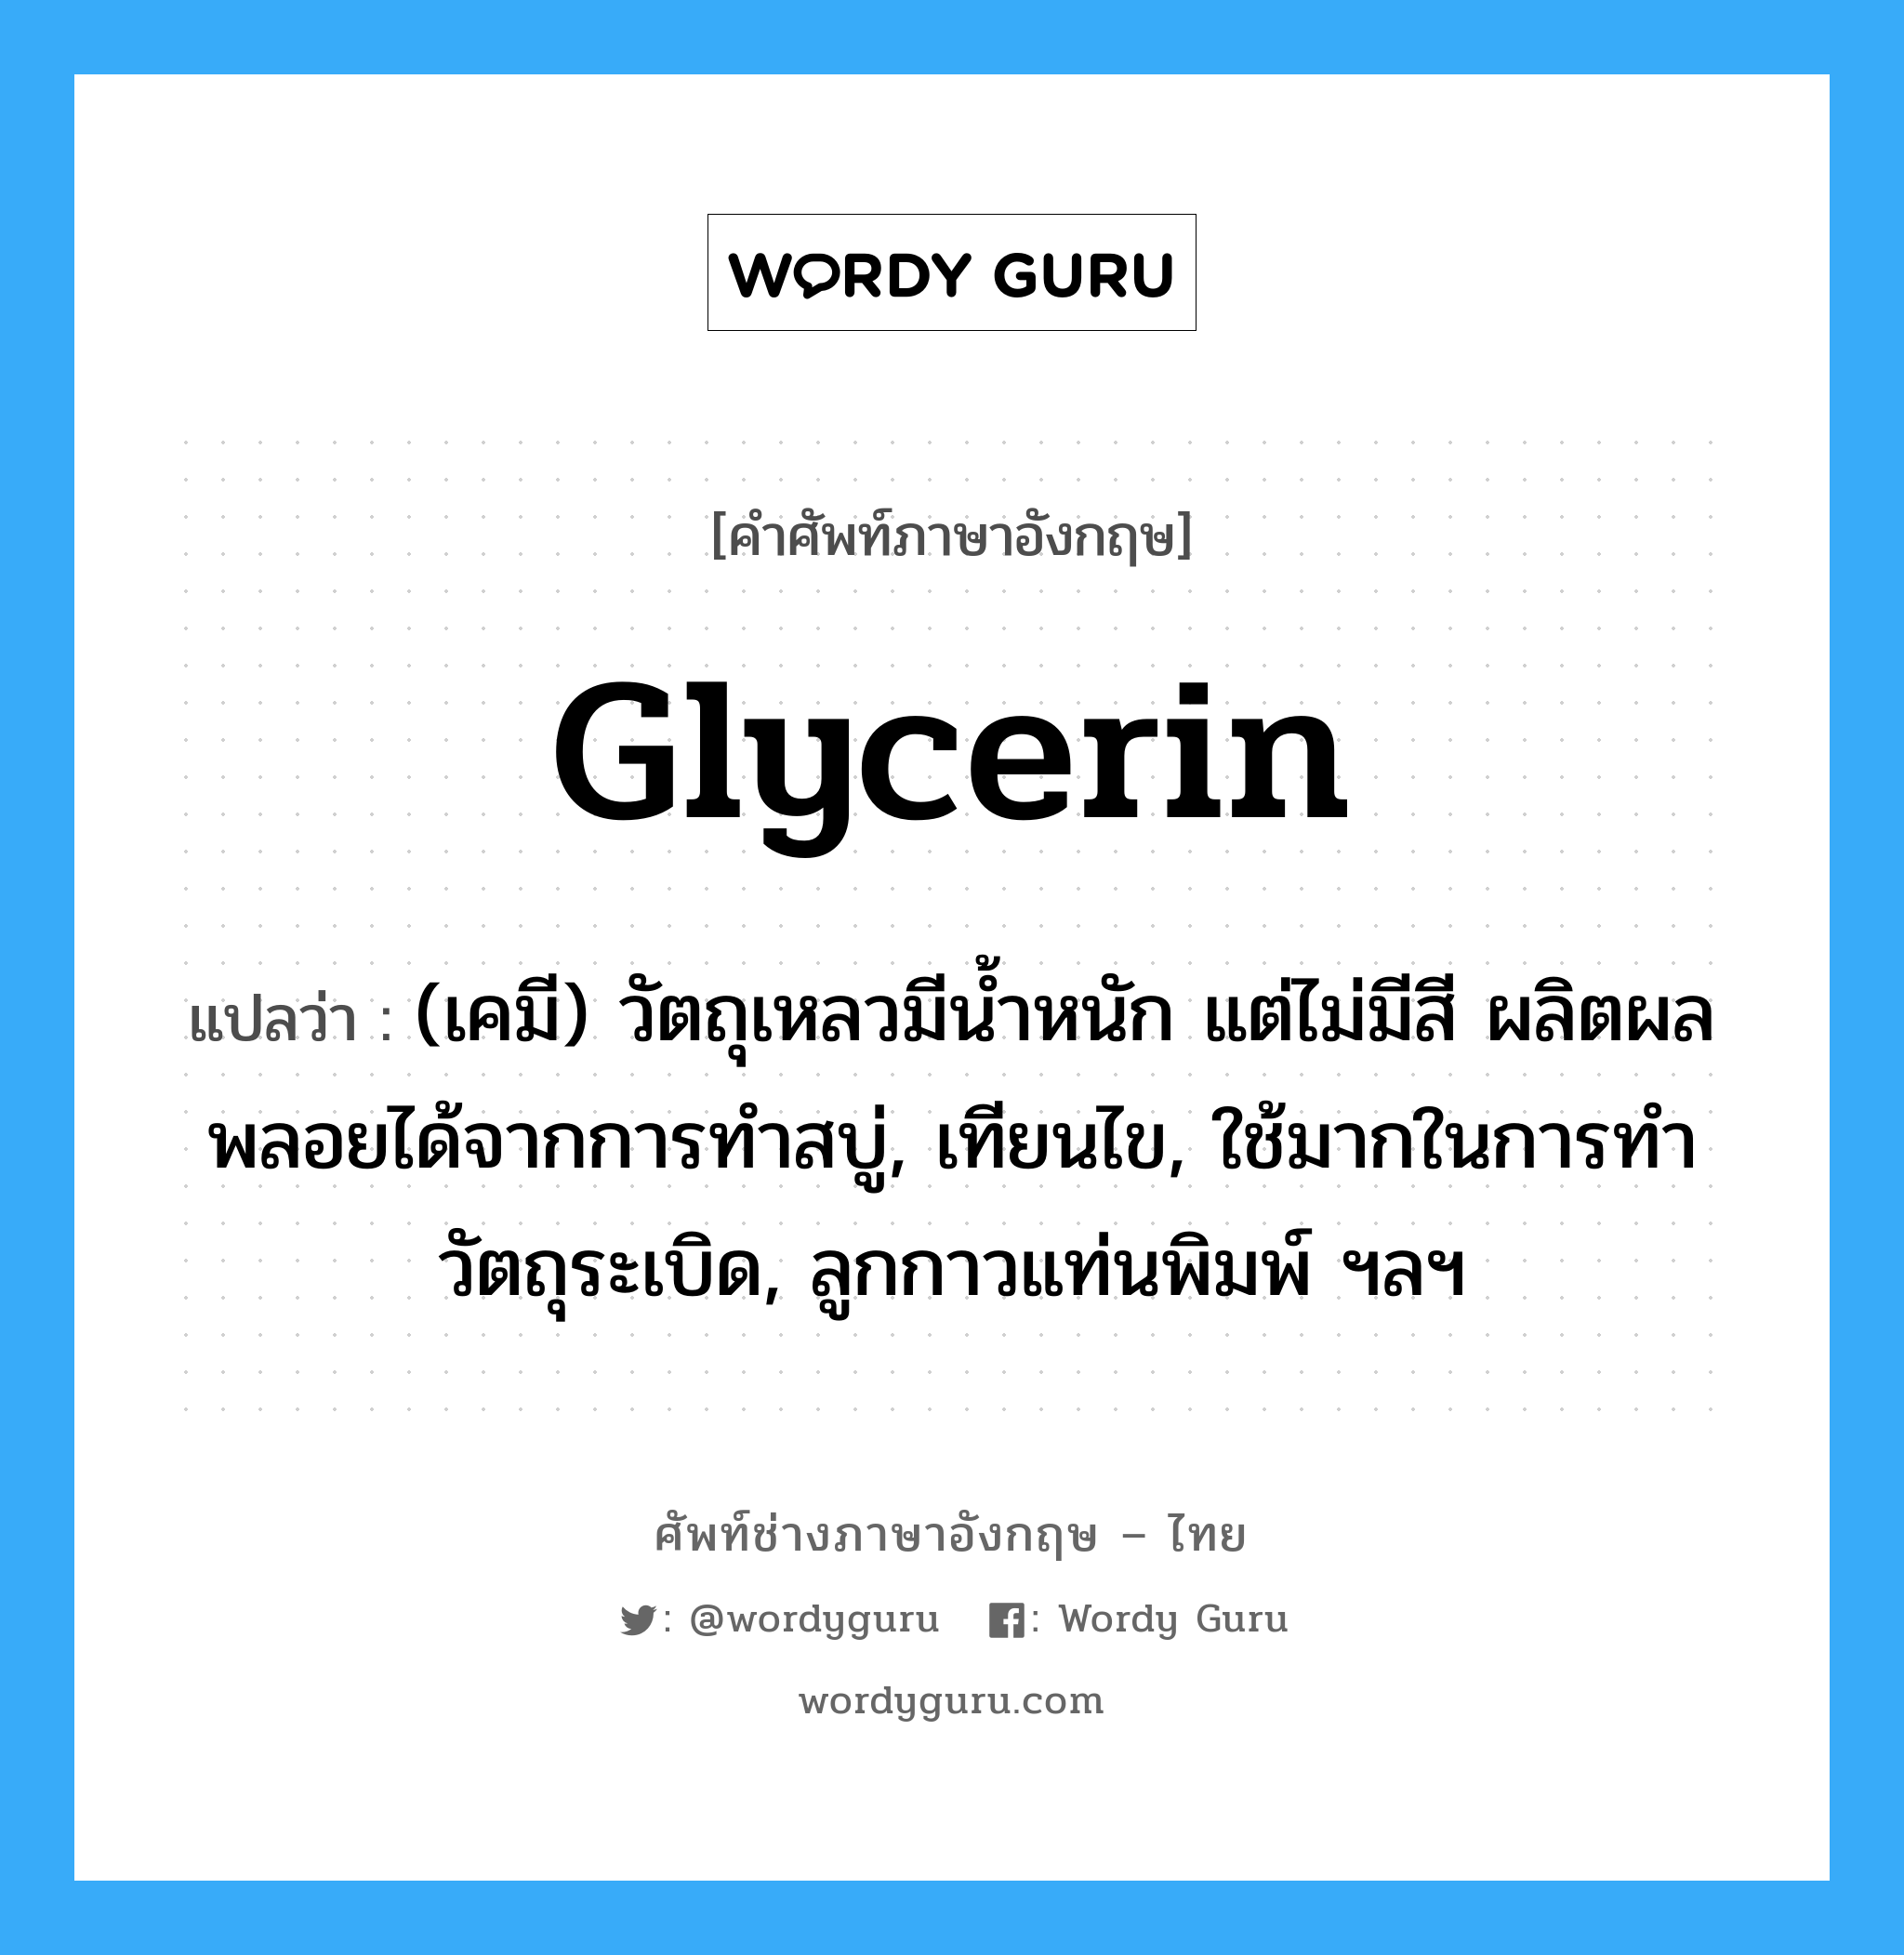 glycerin แปลว่า?, คำศัพท์ช่างภาษาอังกฤษ - ไทย glycerin คำศัพท์ภาษาอังกฤษ glycerin แปลว่า (เคมี) วัตถุเหลวมีน้ำหนัก แต่ไม่มีสี ผลิตผลพลอยได้จากการทำสบู่, เทียนไข, ใช้มากในการทำวัตถุระเบิด, ลูกกาวแท่นพิมพ์ ฯลฯ